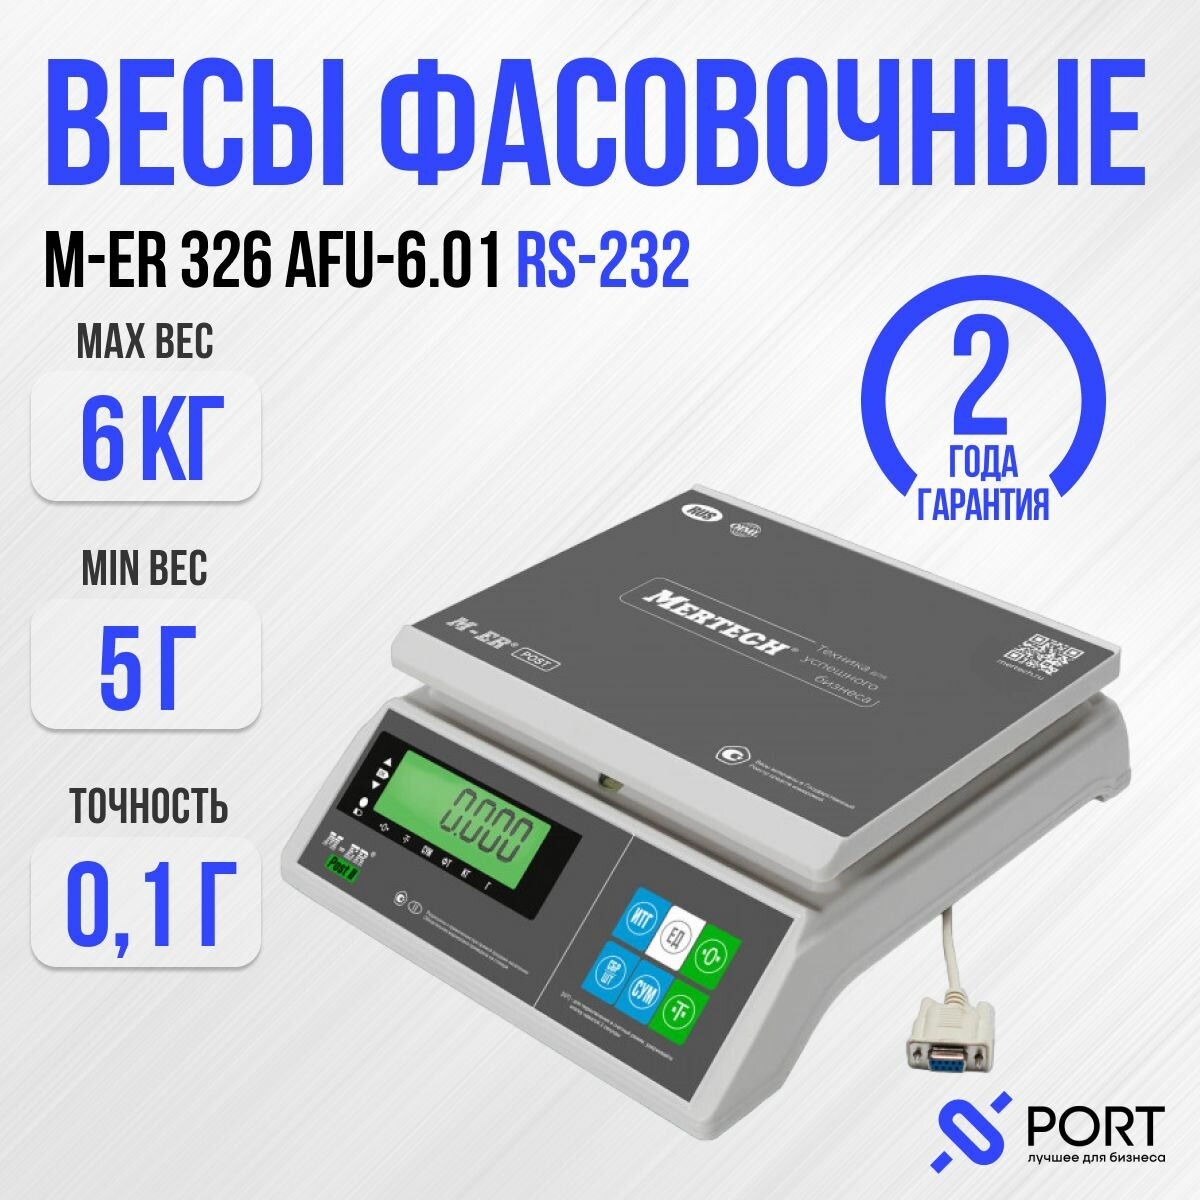 Весы фасовочные M-ER 326 AFU-6.01 "Post II" RS-232, 6 кг